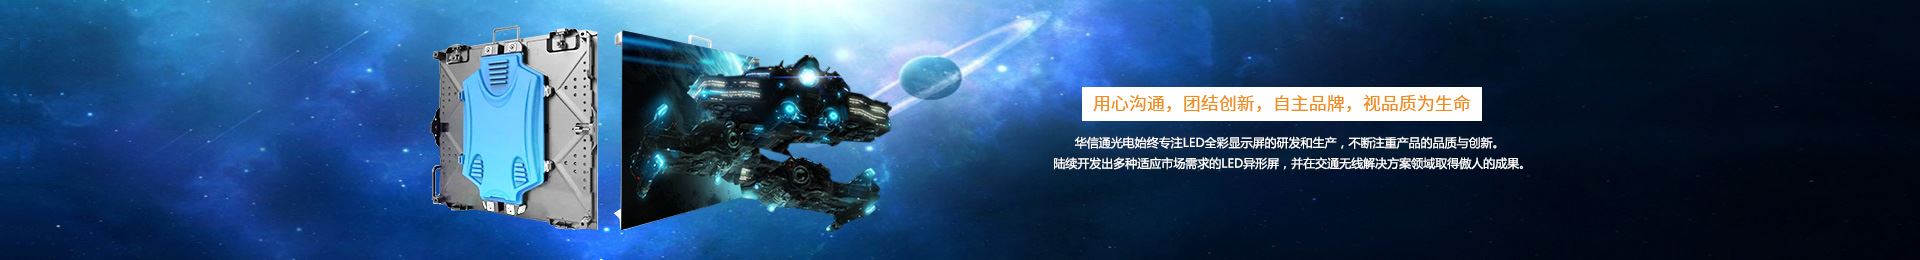 深圳市天9国际娱乐网站科技有限公司